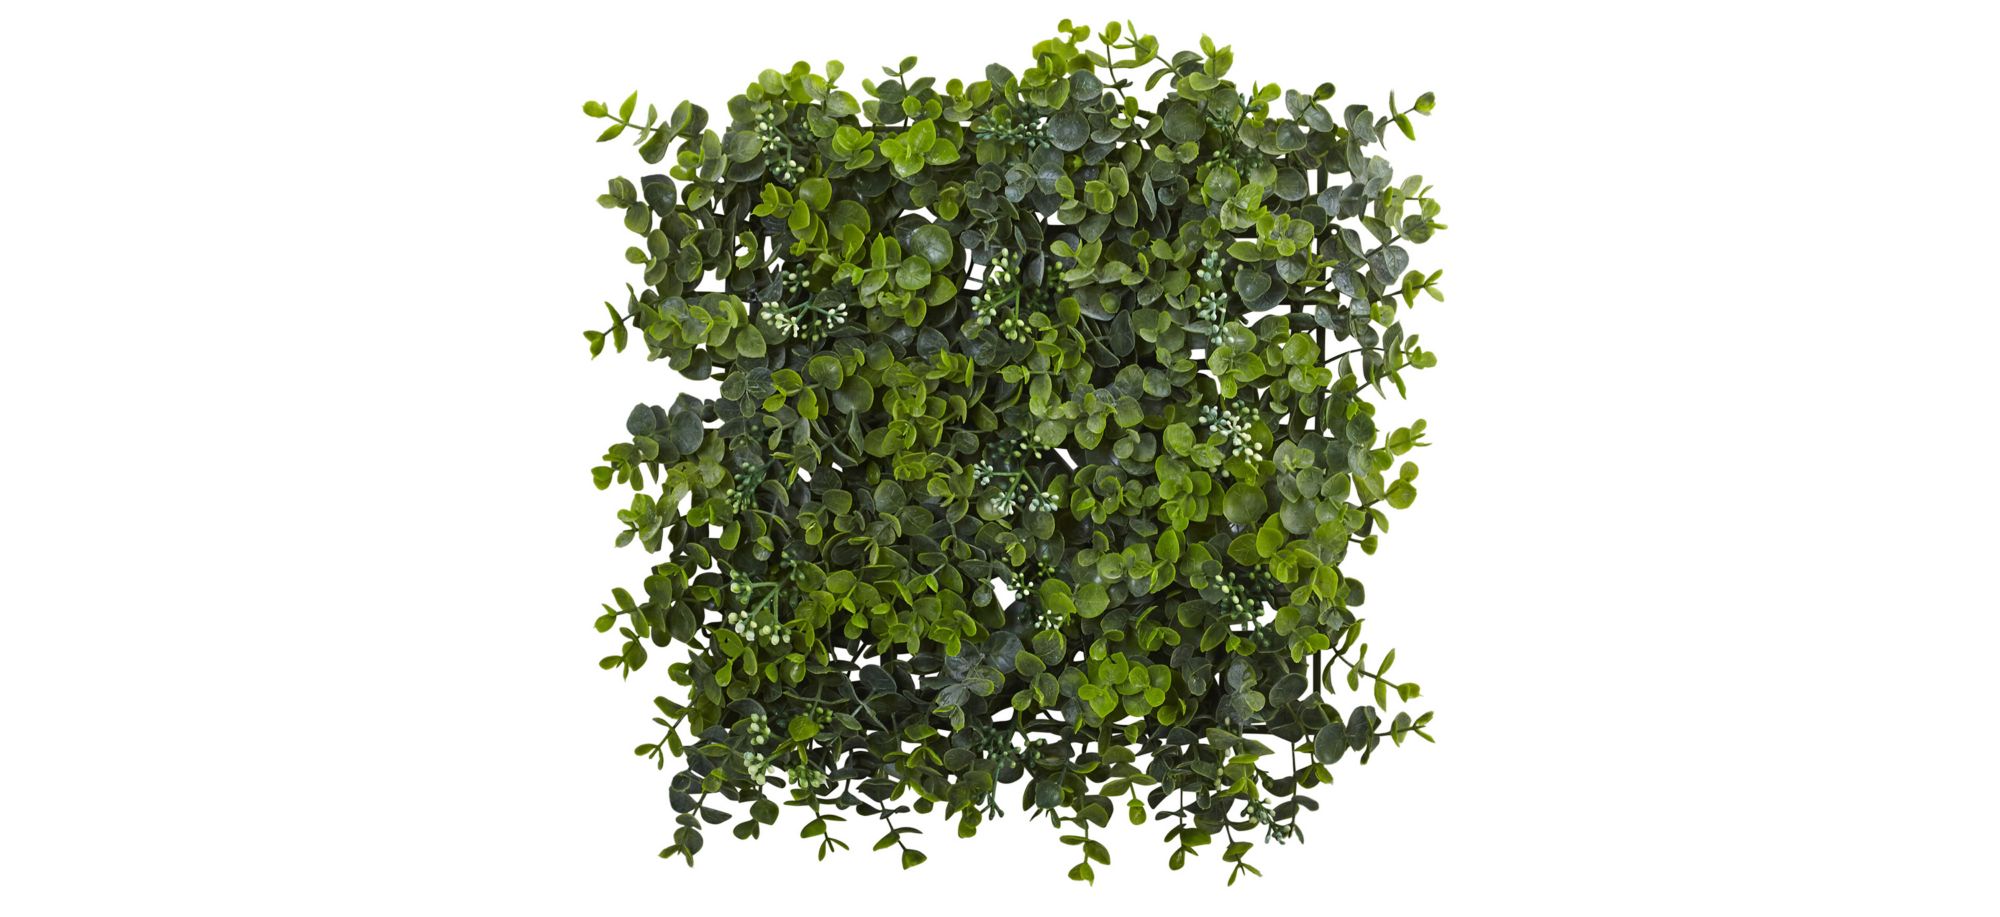 12in. x 12in. Eucalyptus Mat (Set of 8) in Green by Bellanest